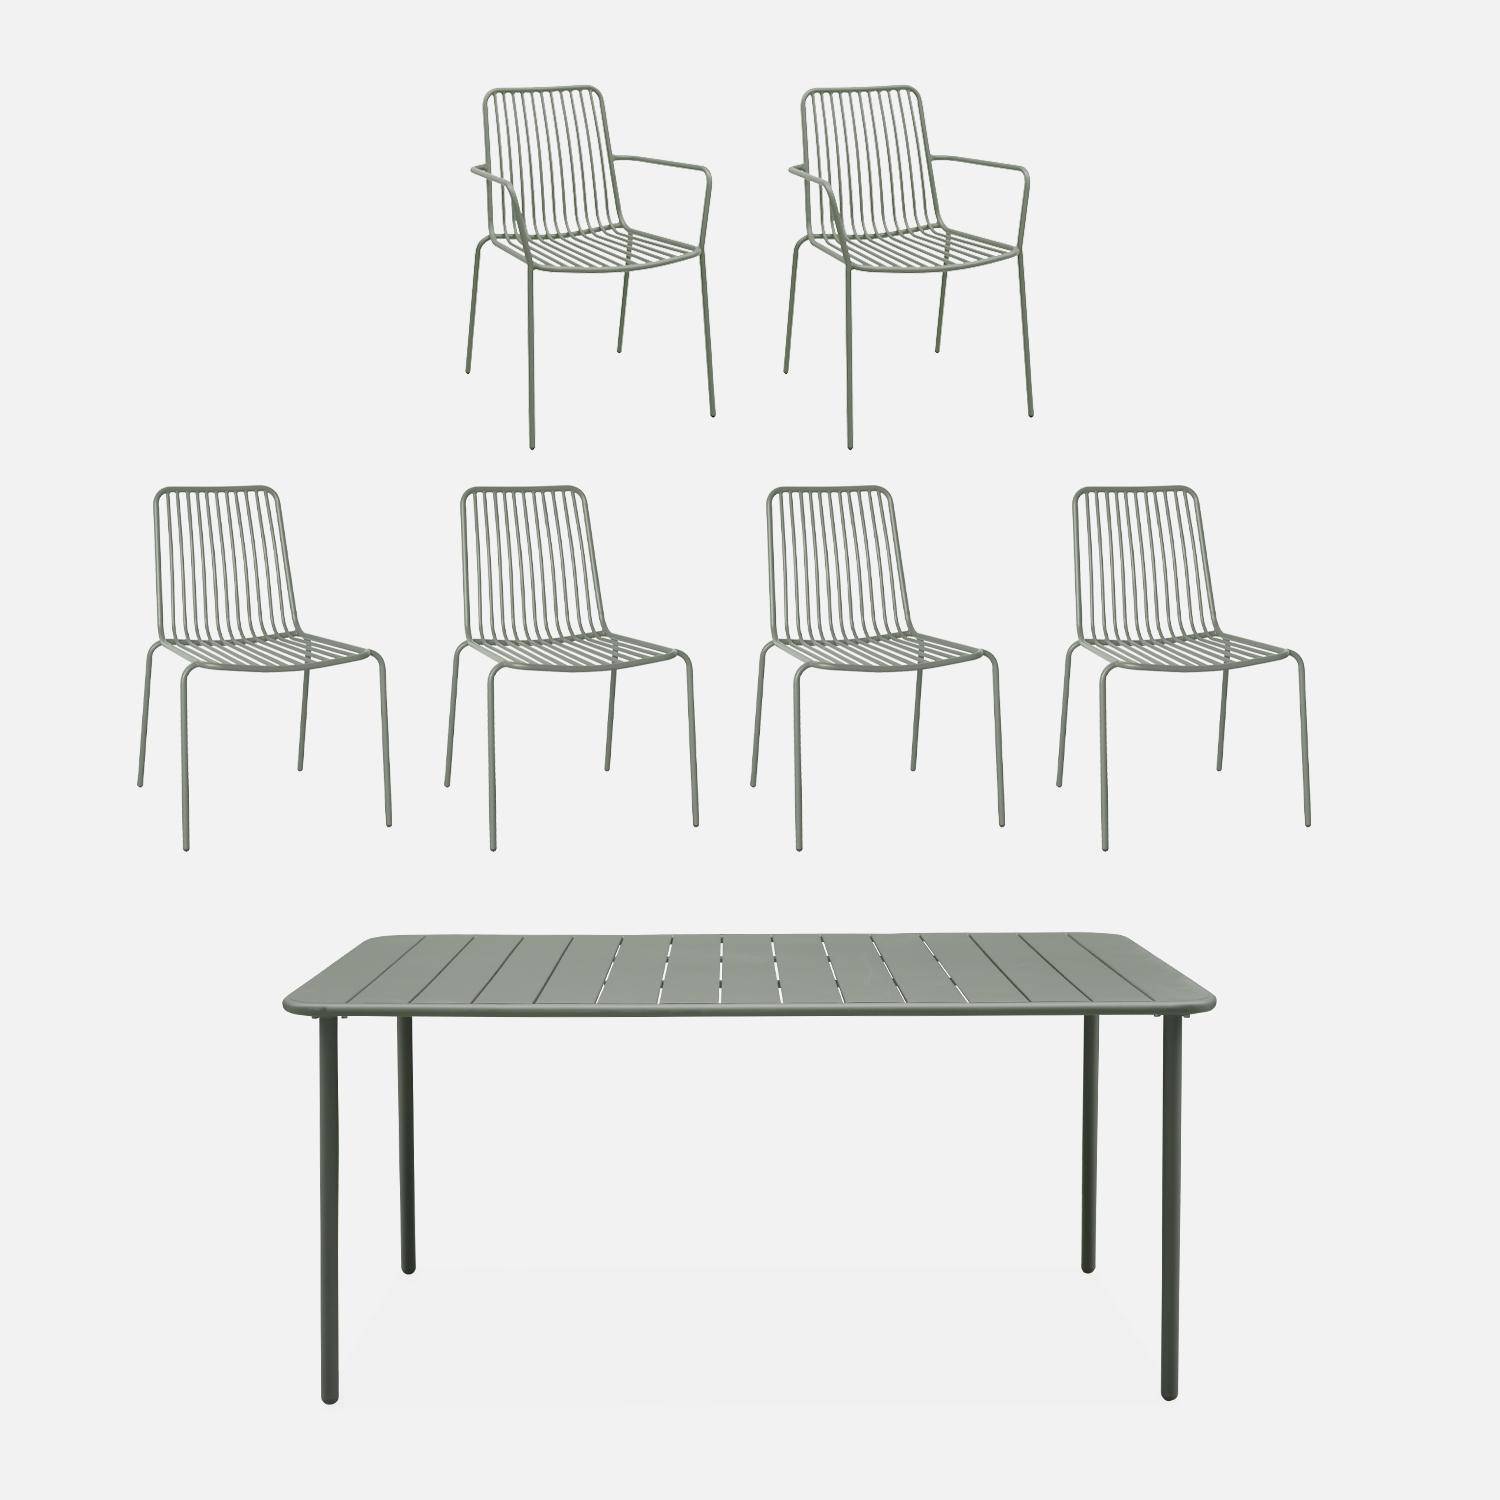 Table de jardin métal + 4 chaises et 2 fauteuils savane Photo1